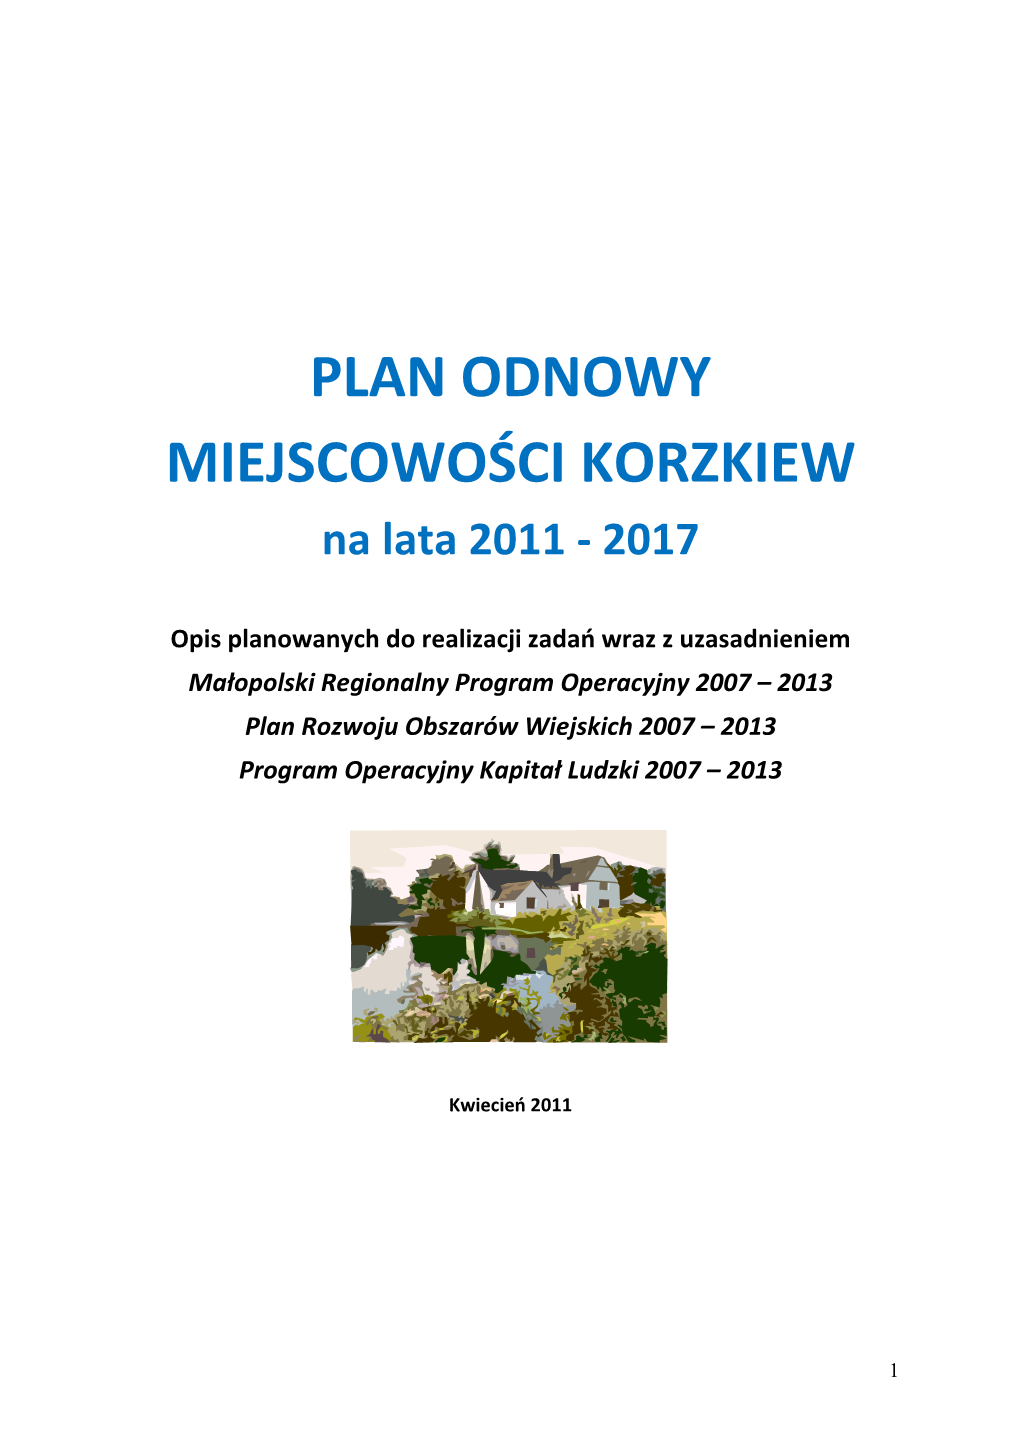 PLAN ODNOWY MIEJSCOWOŚCI KORZKIEW Na Lata 2011 - 2017